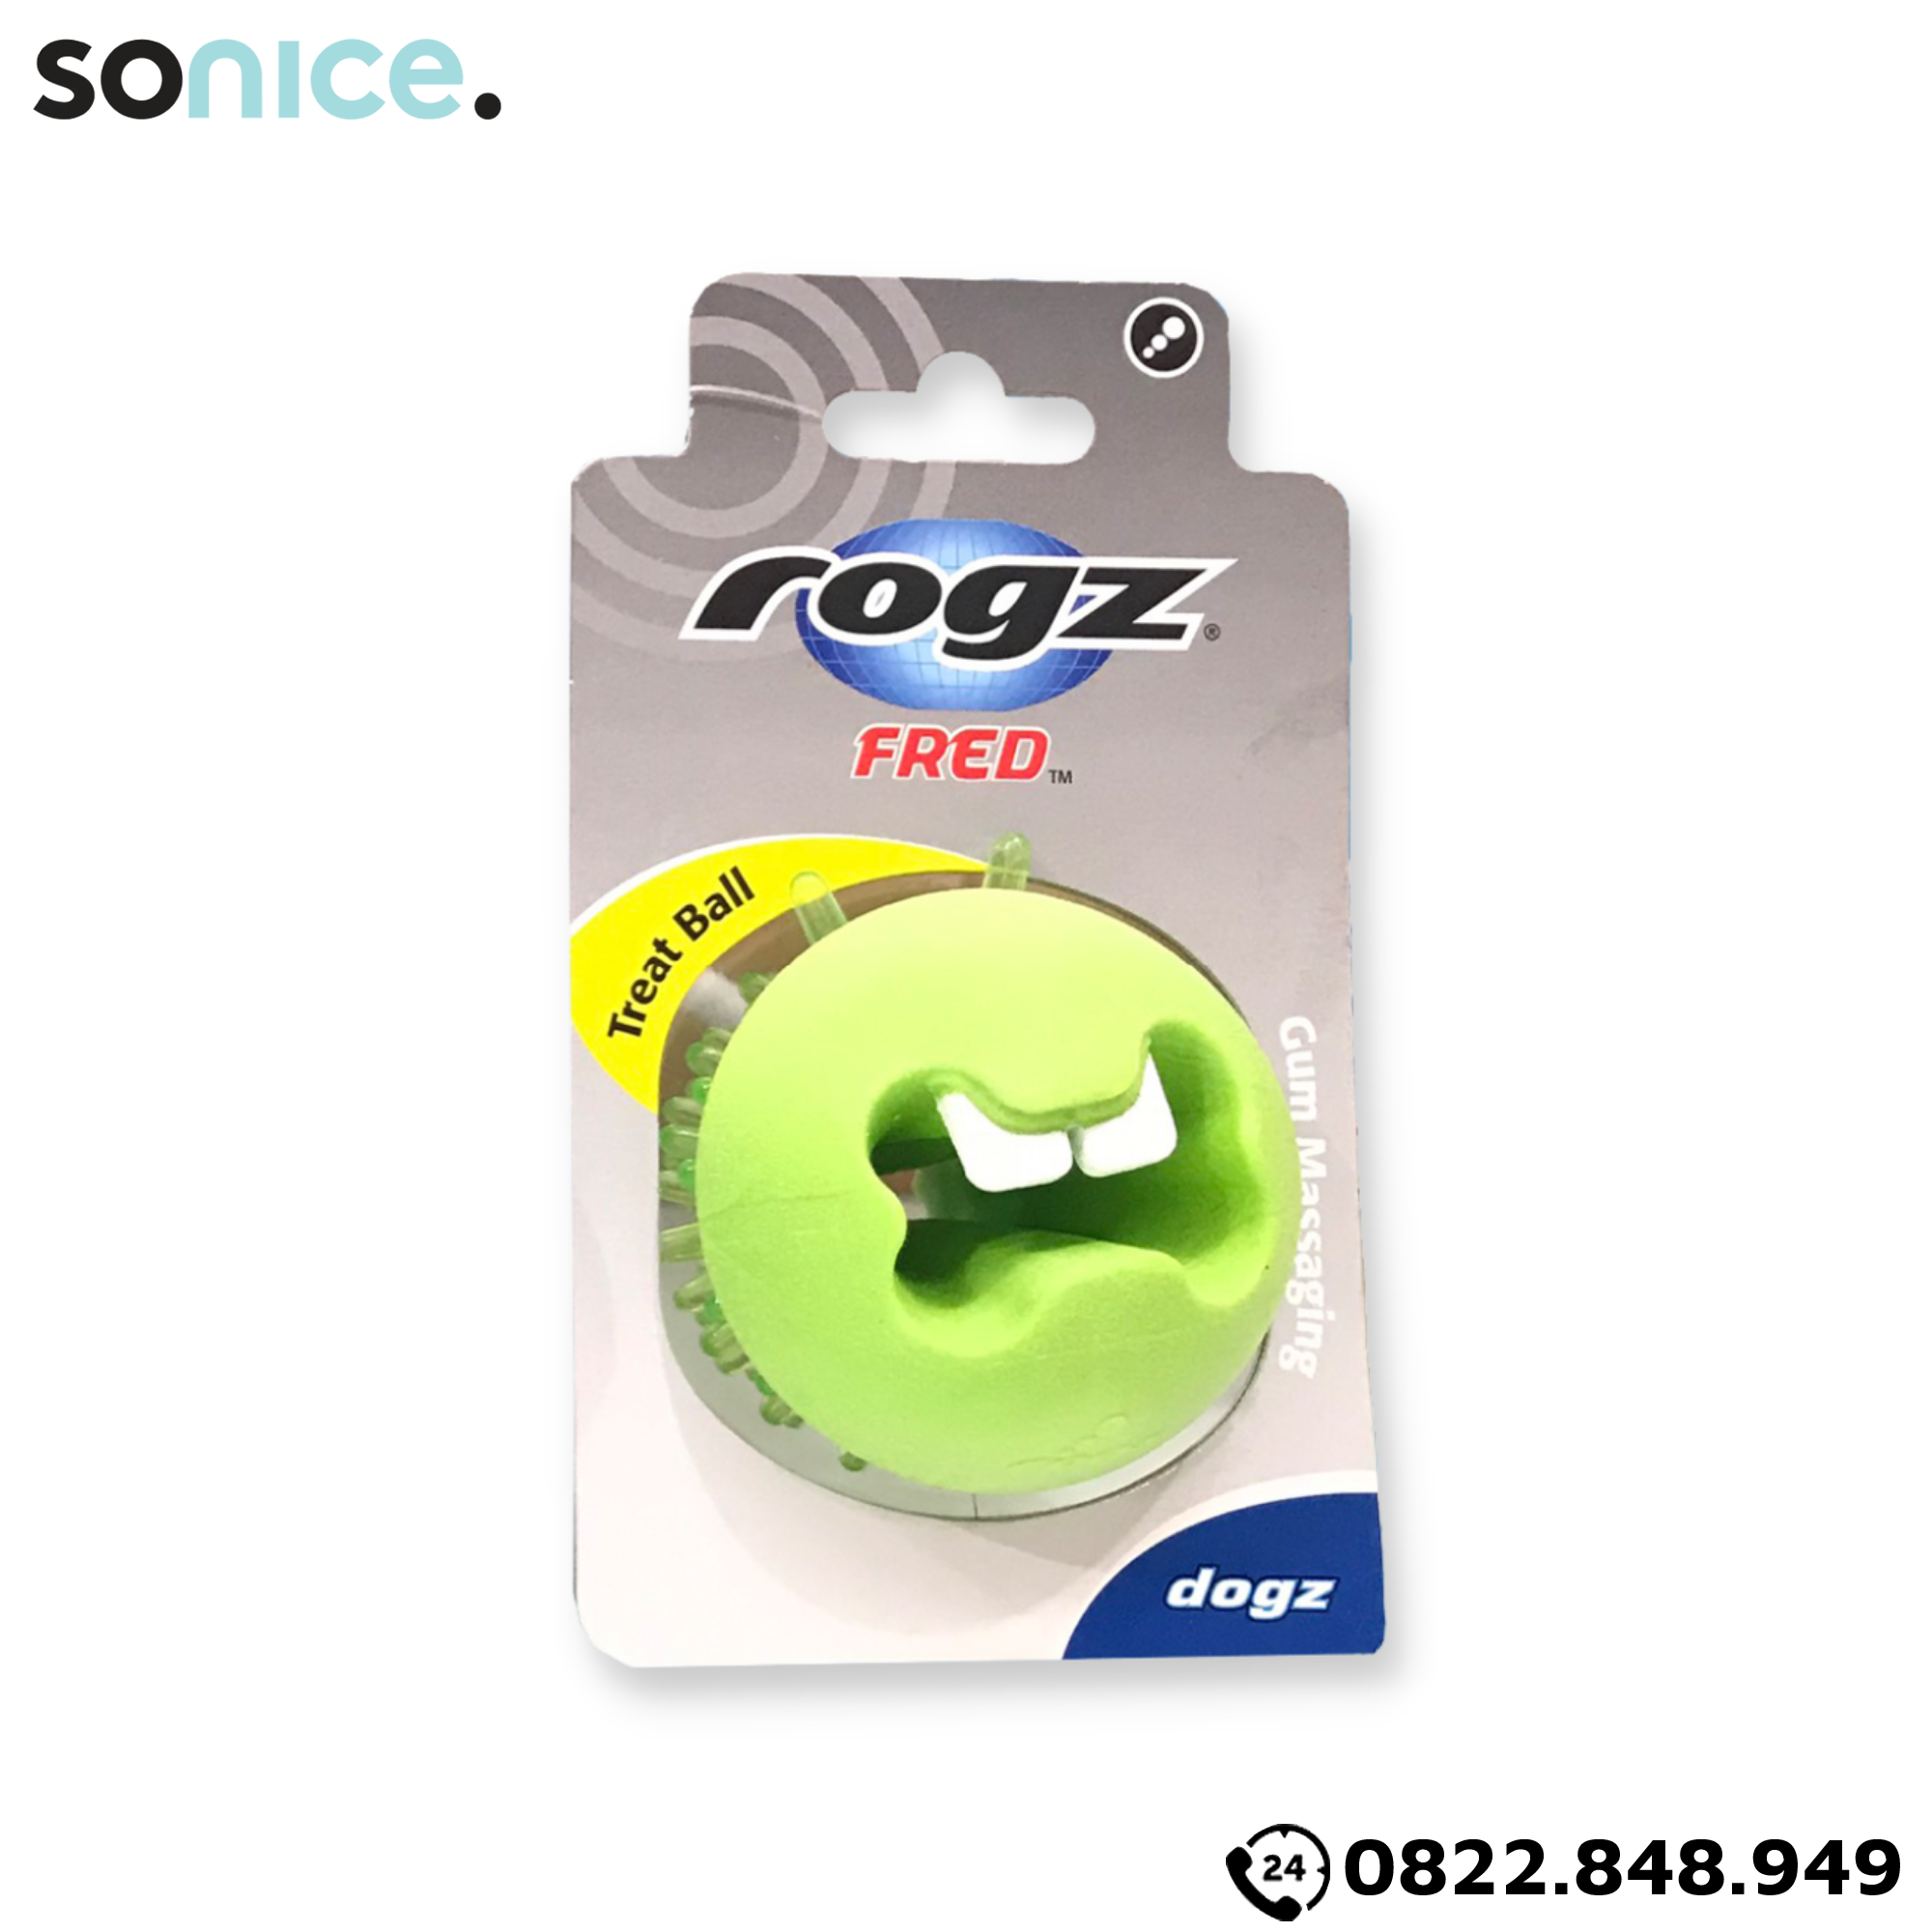  Đồ chơi Rogz Fred Treat Ball Toys - Có thể chứa treats SONICE. 